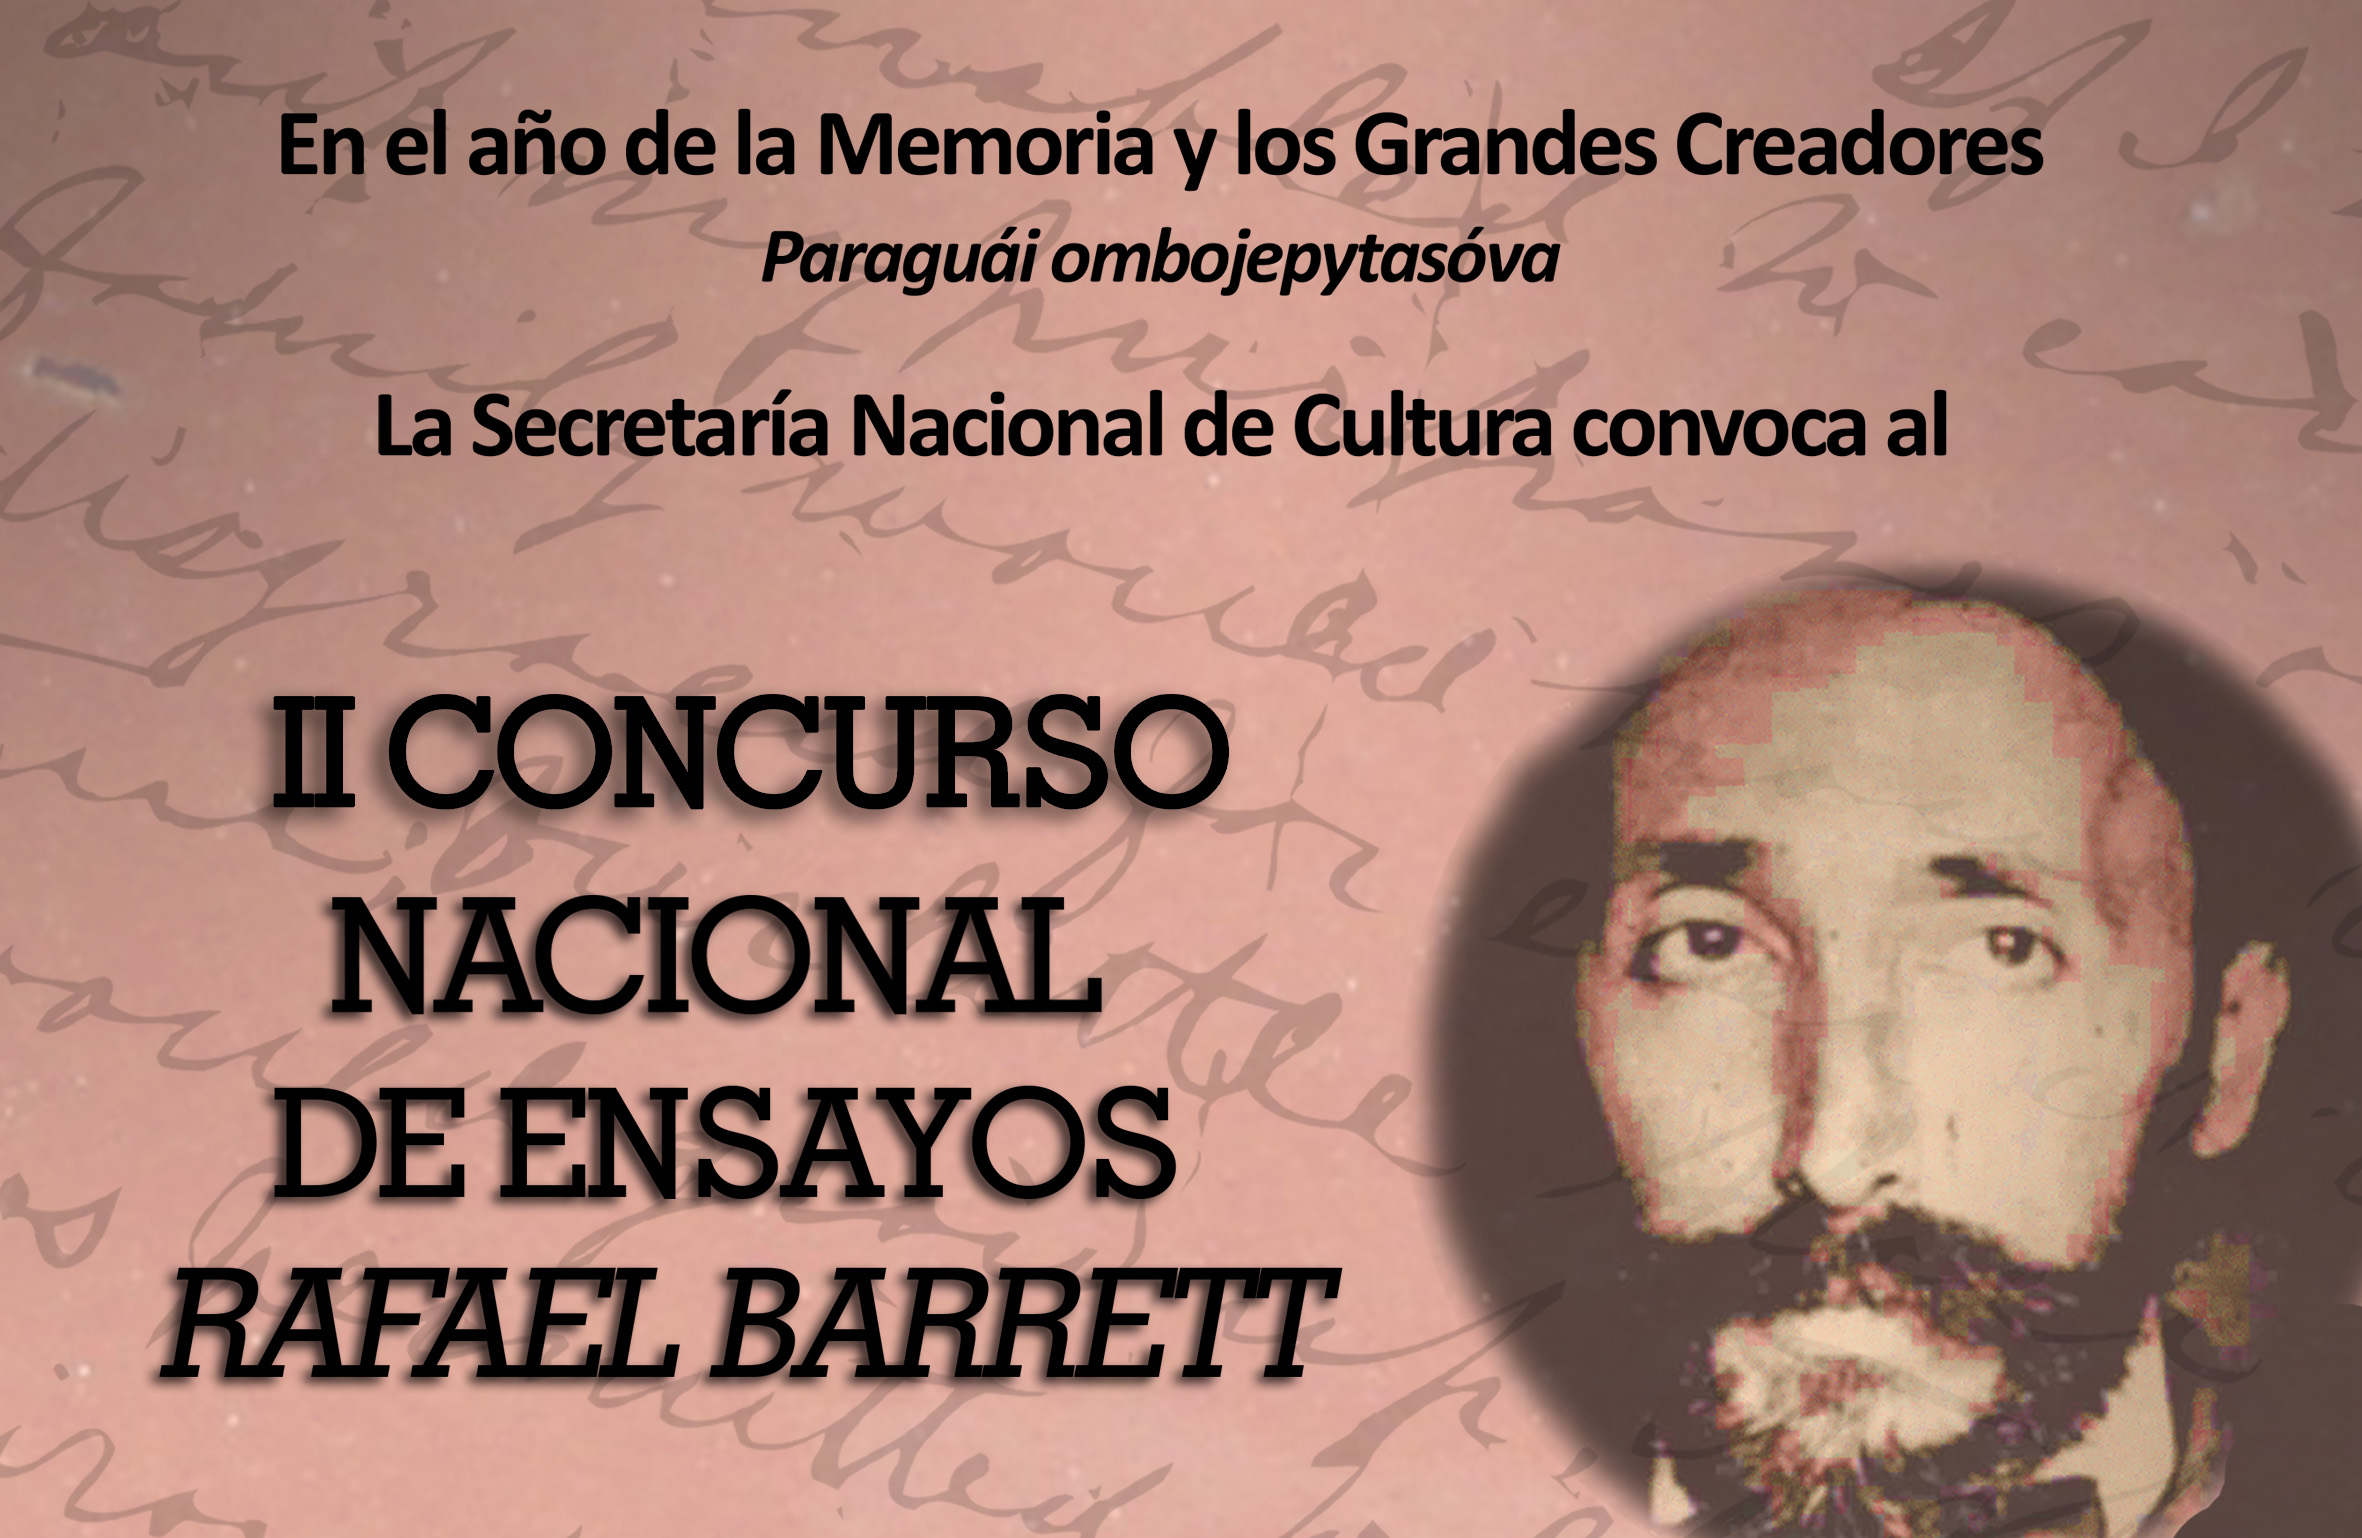 Continúa vigente la convocatoria para el II Concurso Nacional de Ensayos “Rafael Barret” imagen